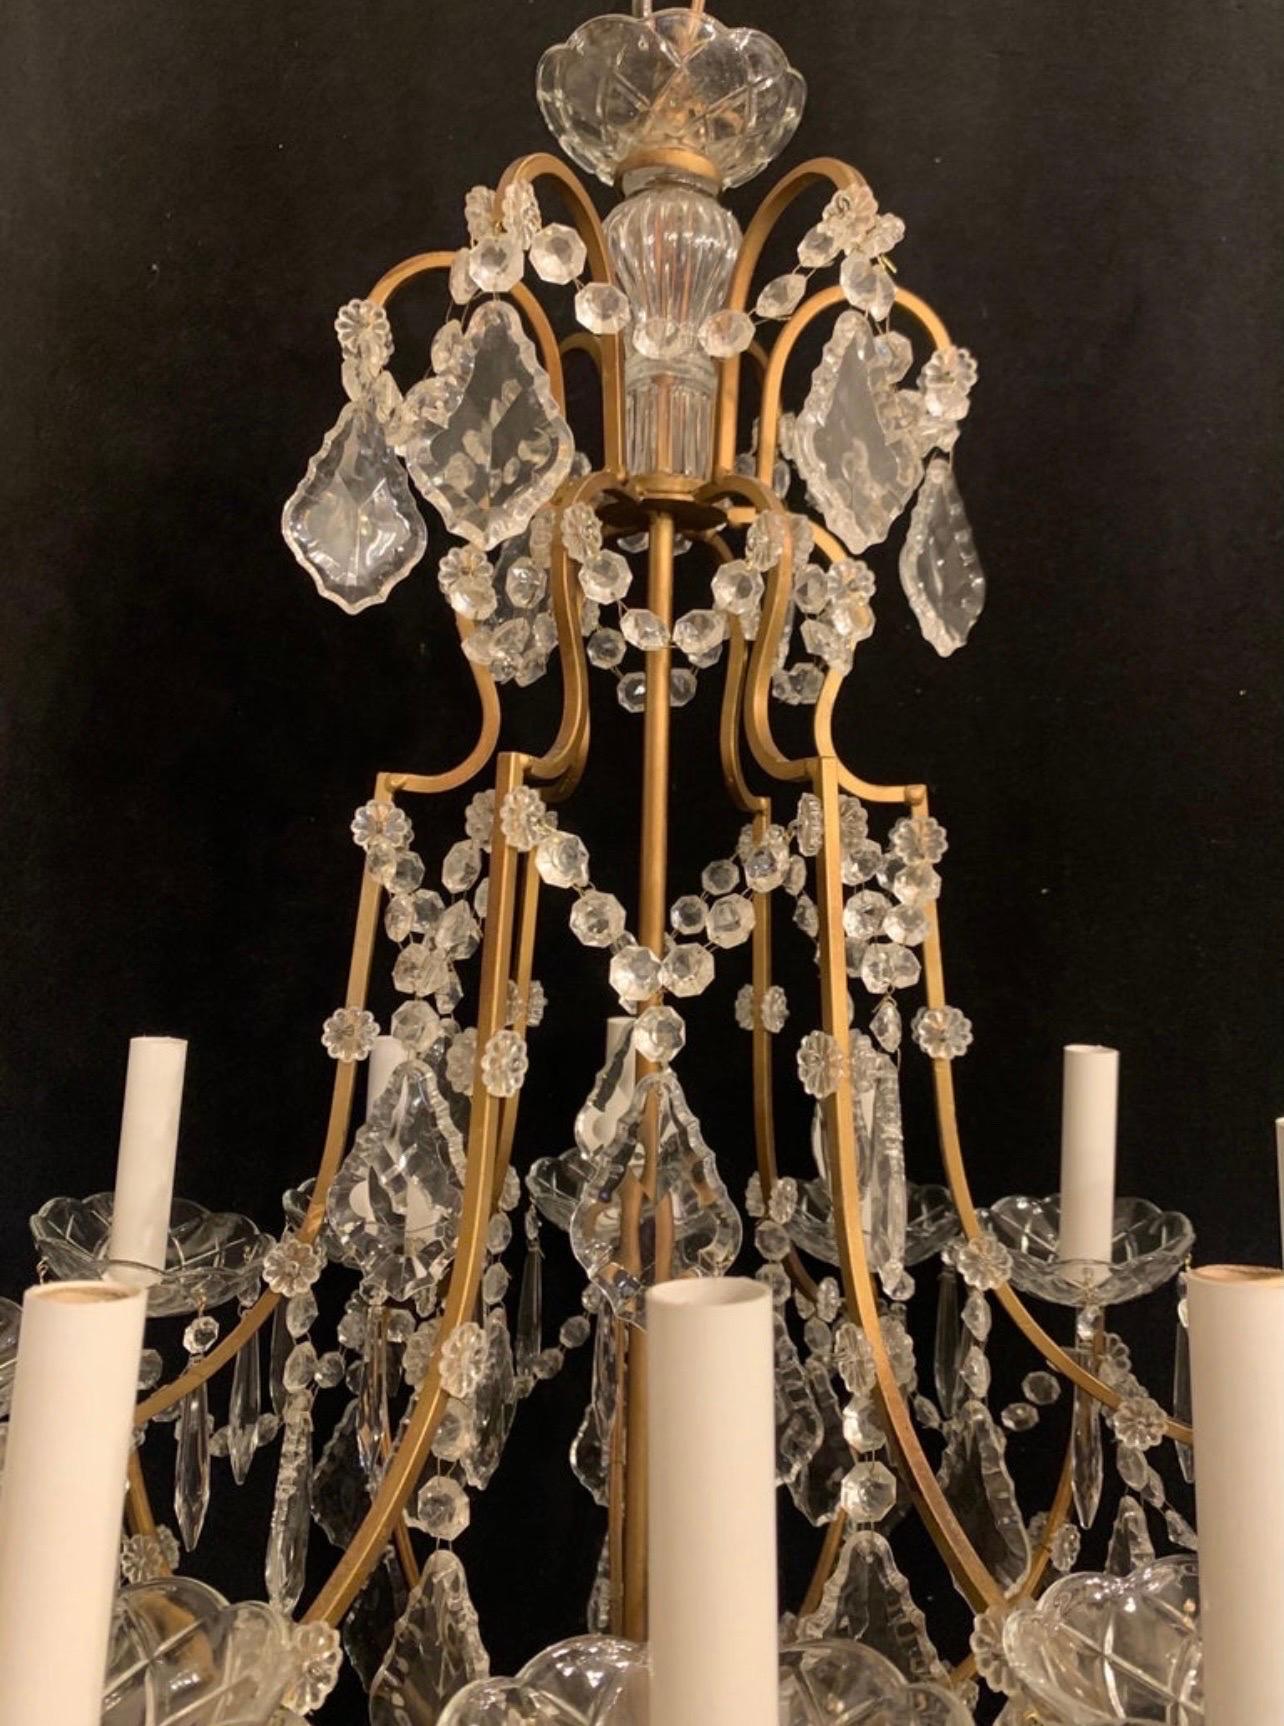 Magnifique lustre italien en cristal et or doré, composé de 12 candélabres, recâblé et prêt à l'emploi, avec chaîne et quincaillerie de montage incluses.